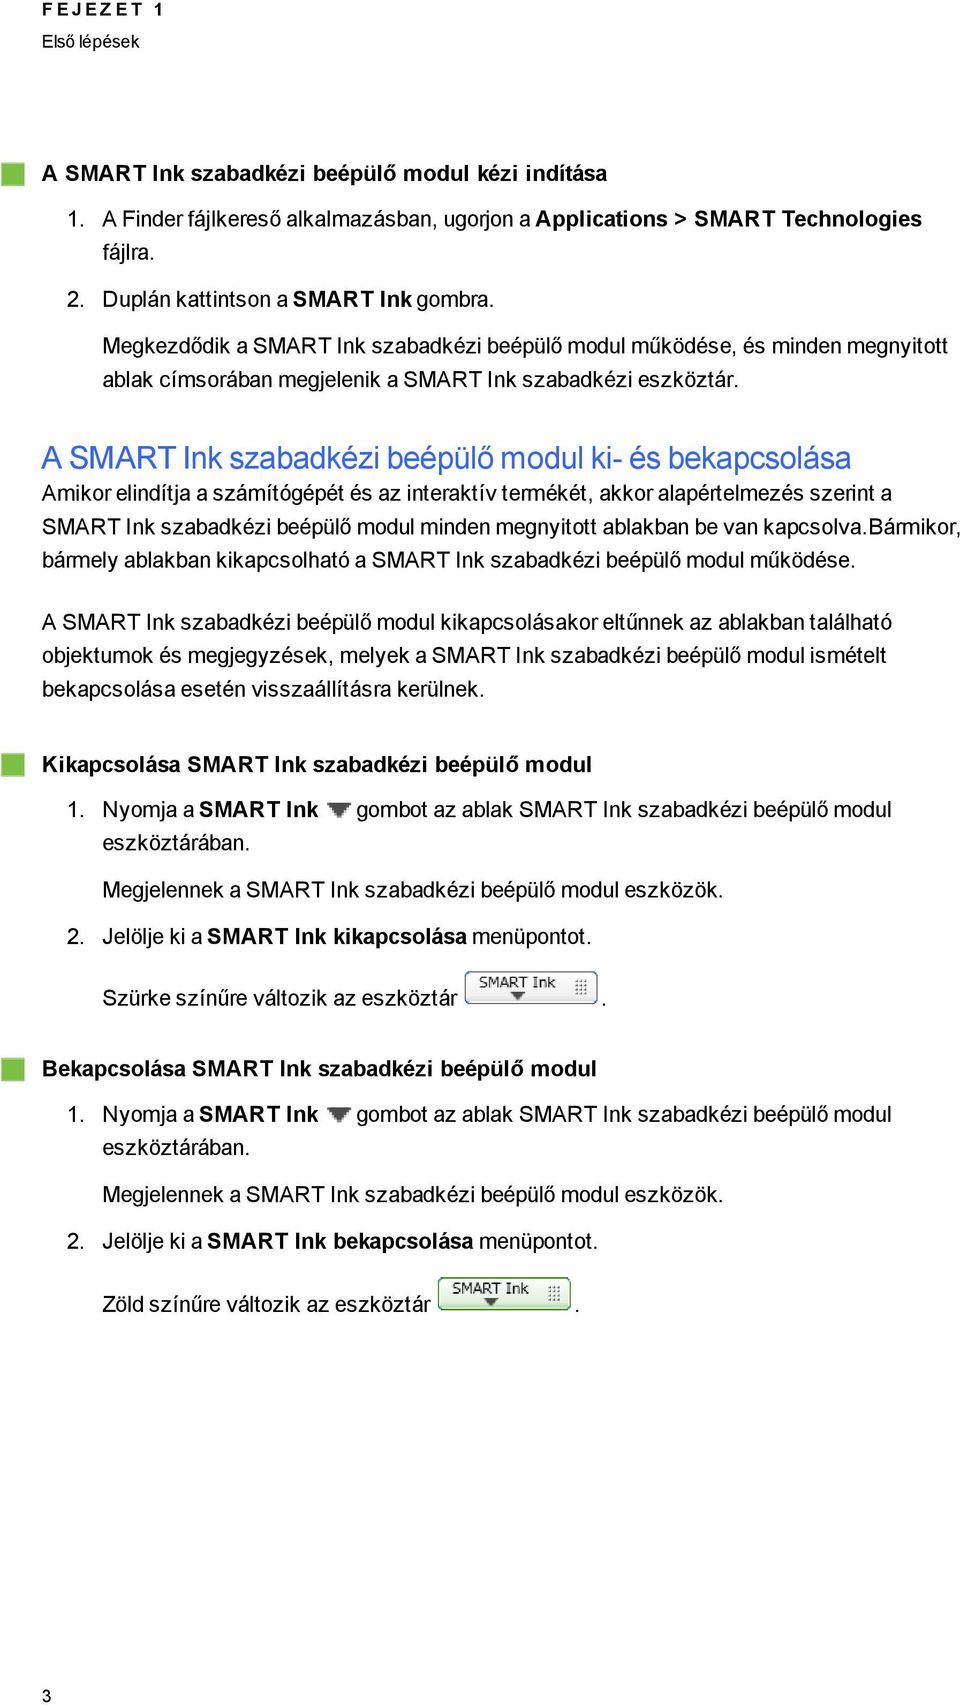 A SMART Ink szabadkézi beépülő modul ki- és bekapcsolása Amikor elindítja a számítóépét és az interaktív termékét, akkor alapértelmezés szerint a SMART Ink szabadkézi beépülő modul minden menyitott